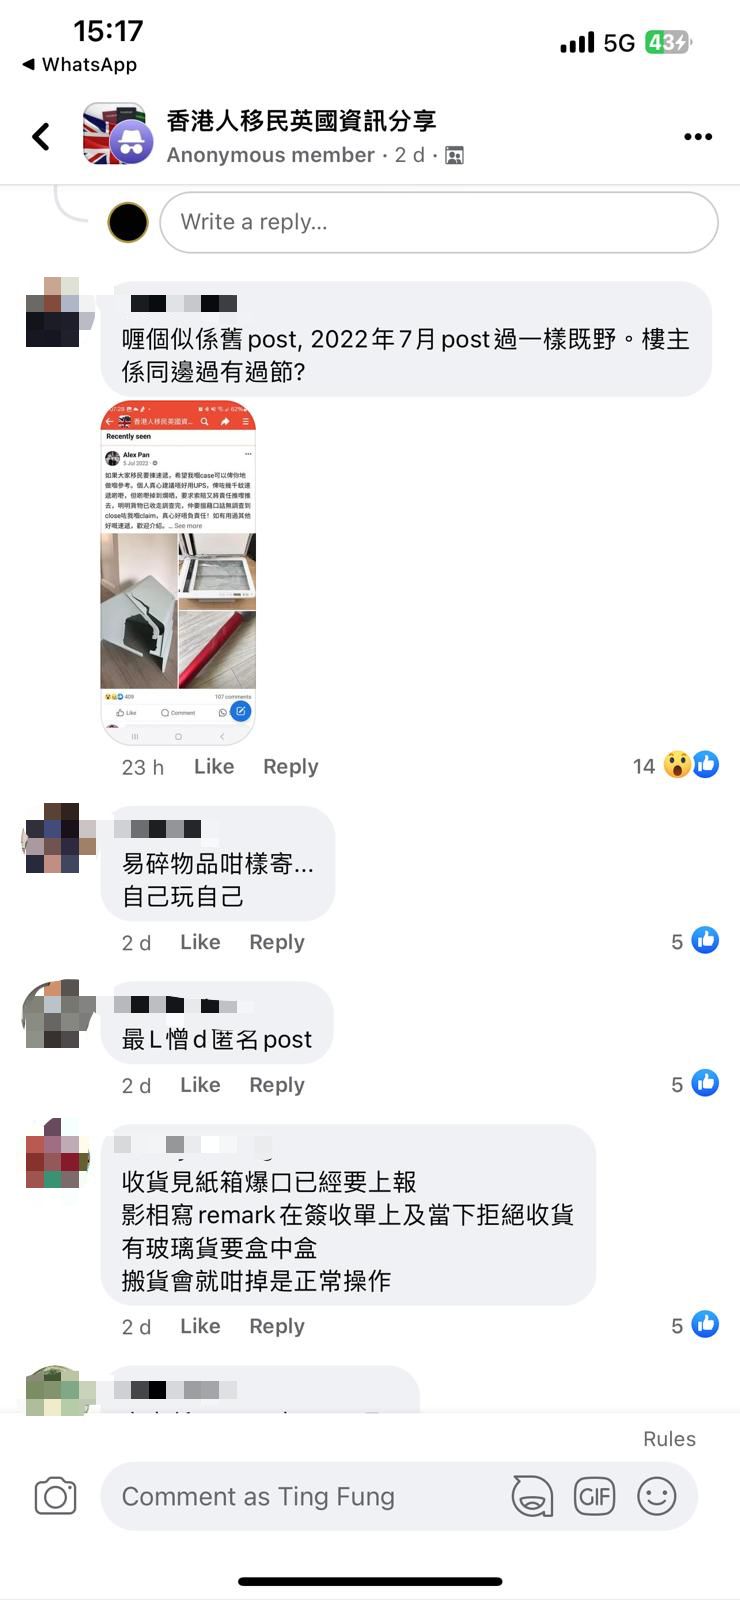 有網民表示若收貨時發現紙箱爆膠口亦應拍照留記錄（圖片來源：Facebook@香港人移民英國資訊分享）